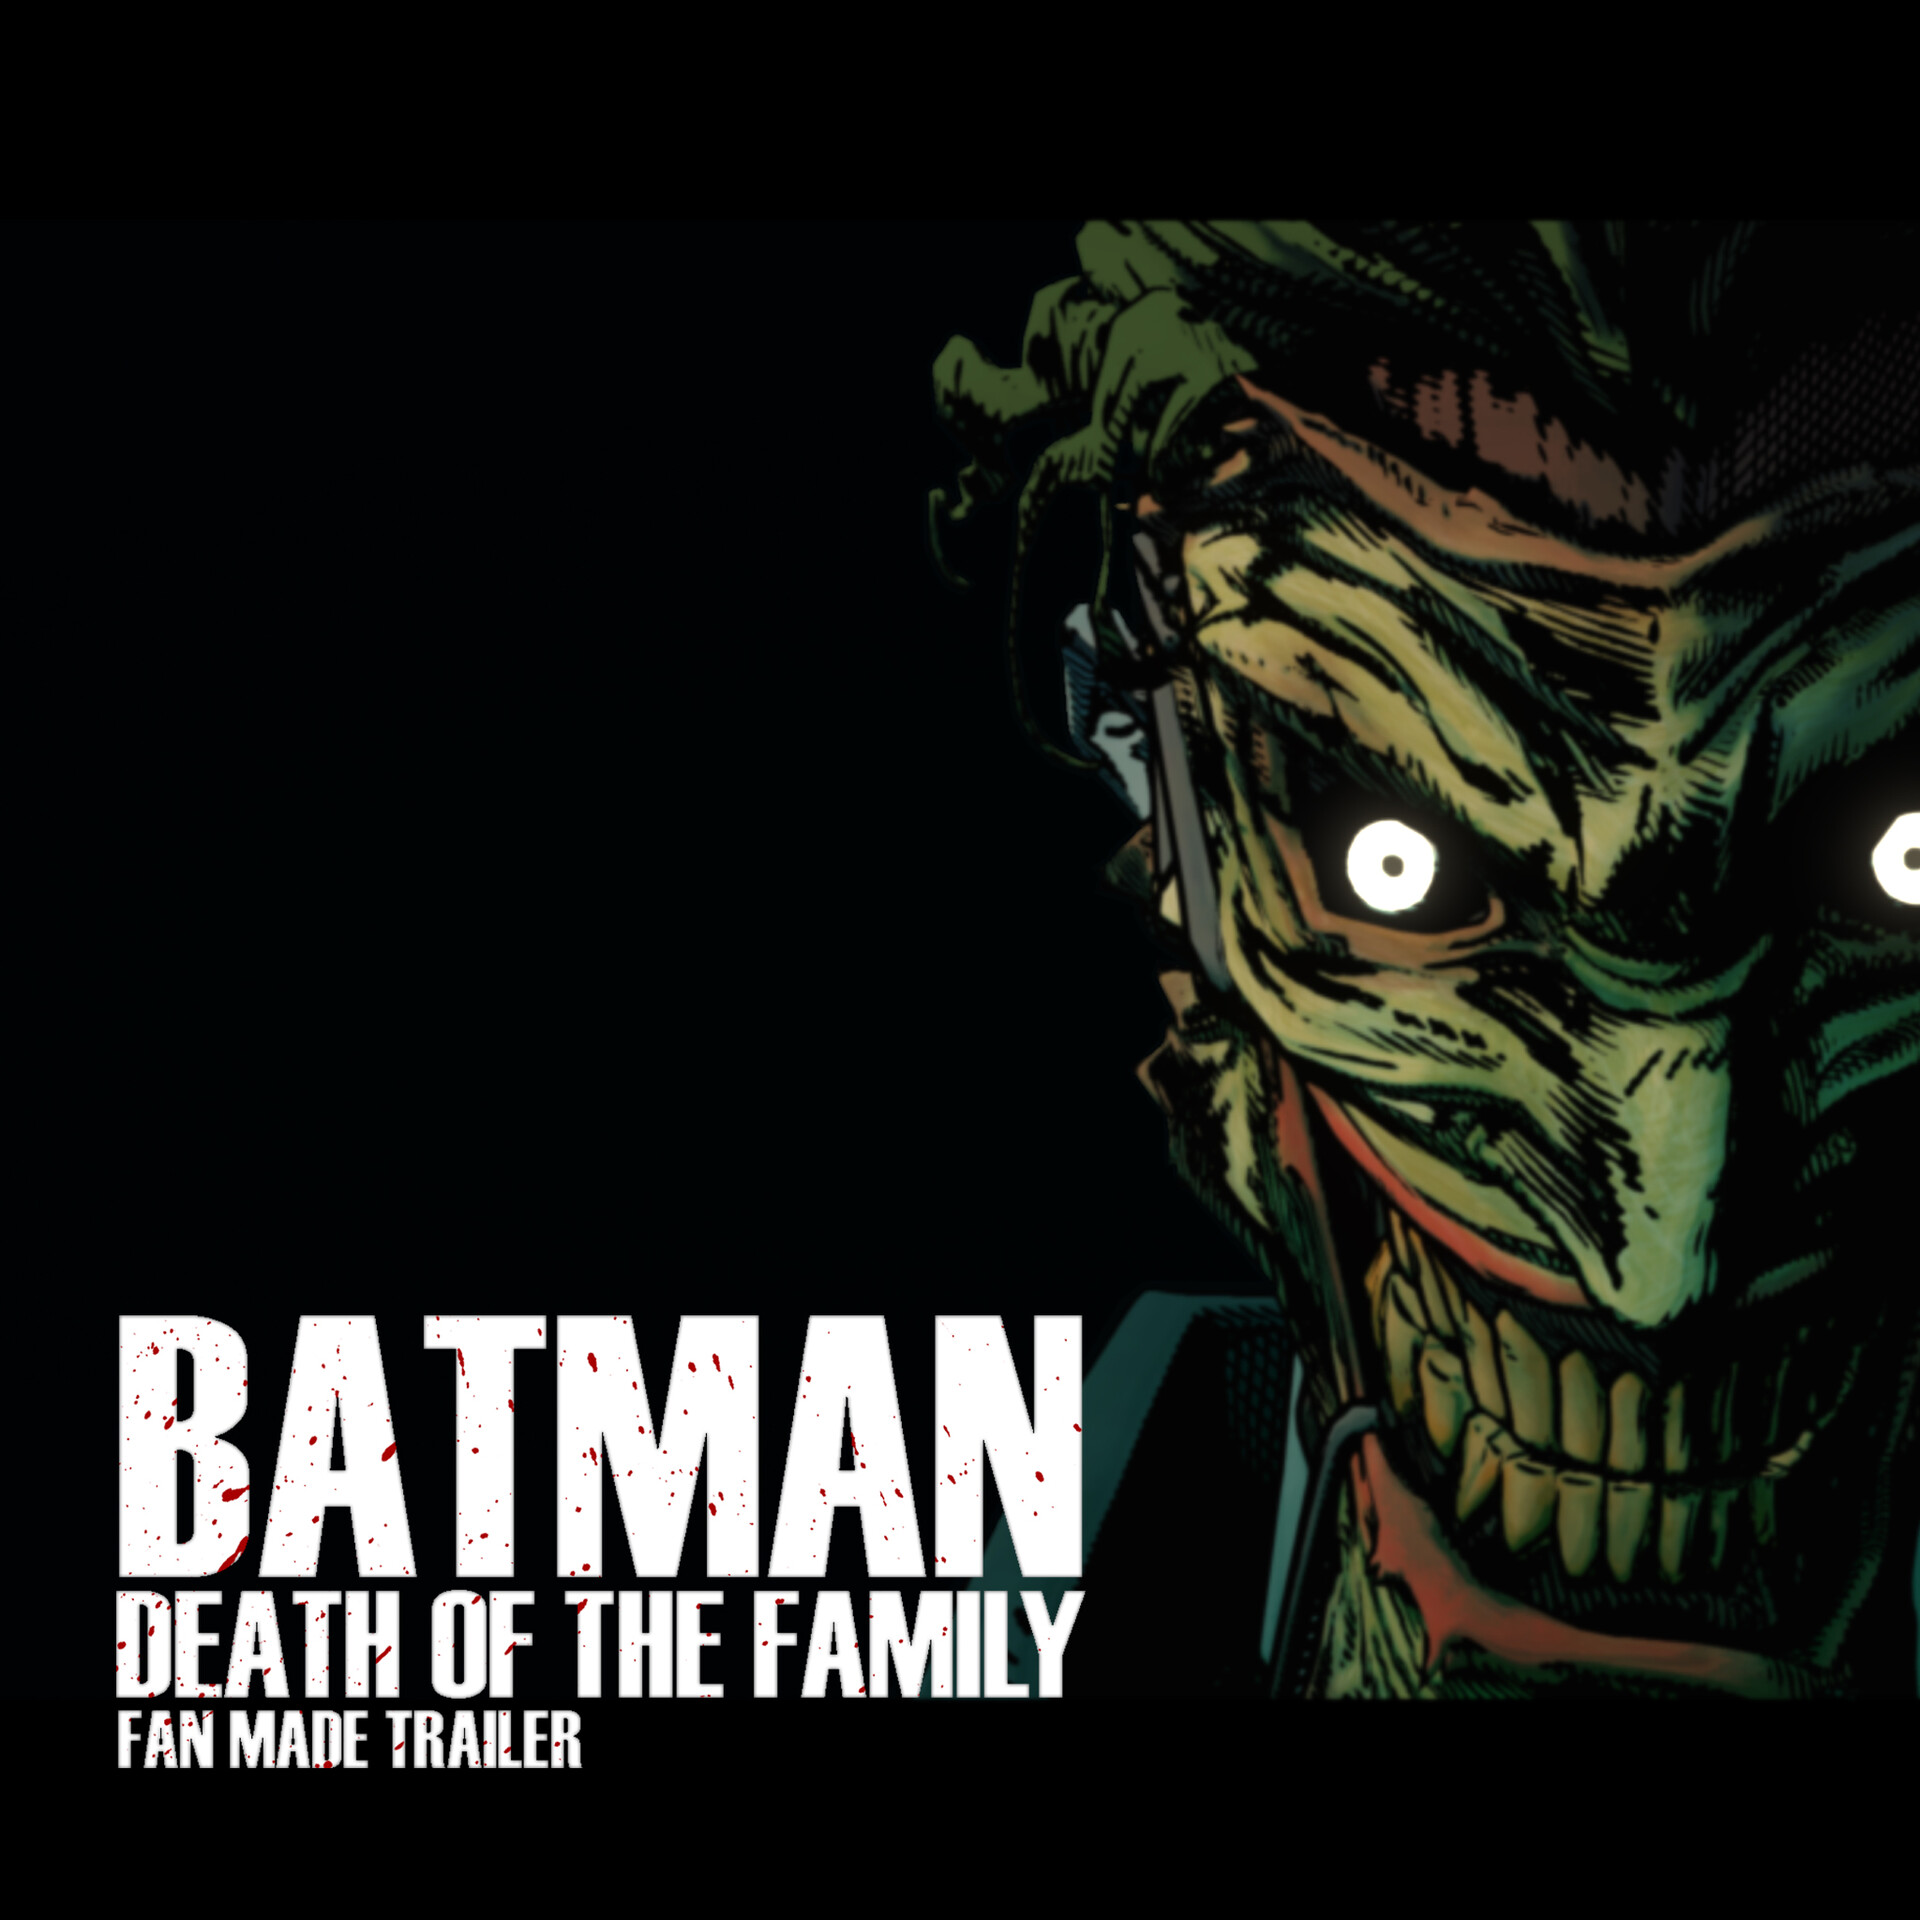 ArtStation - Batman: Death of the Family Fan Made Trailer